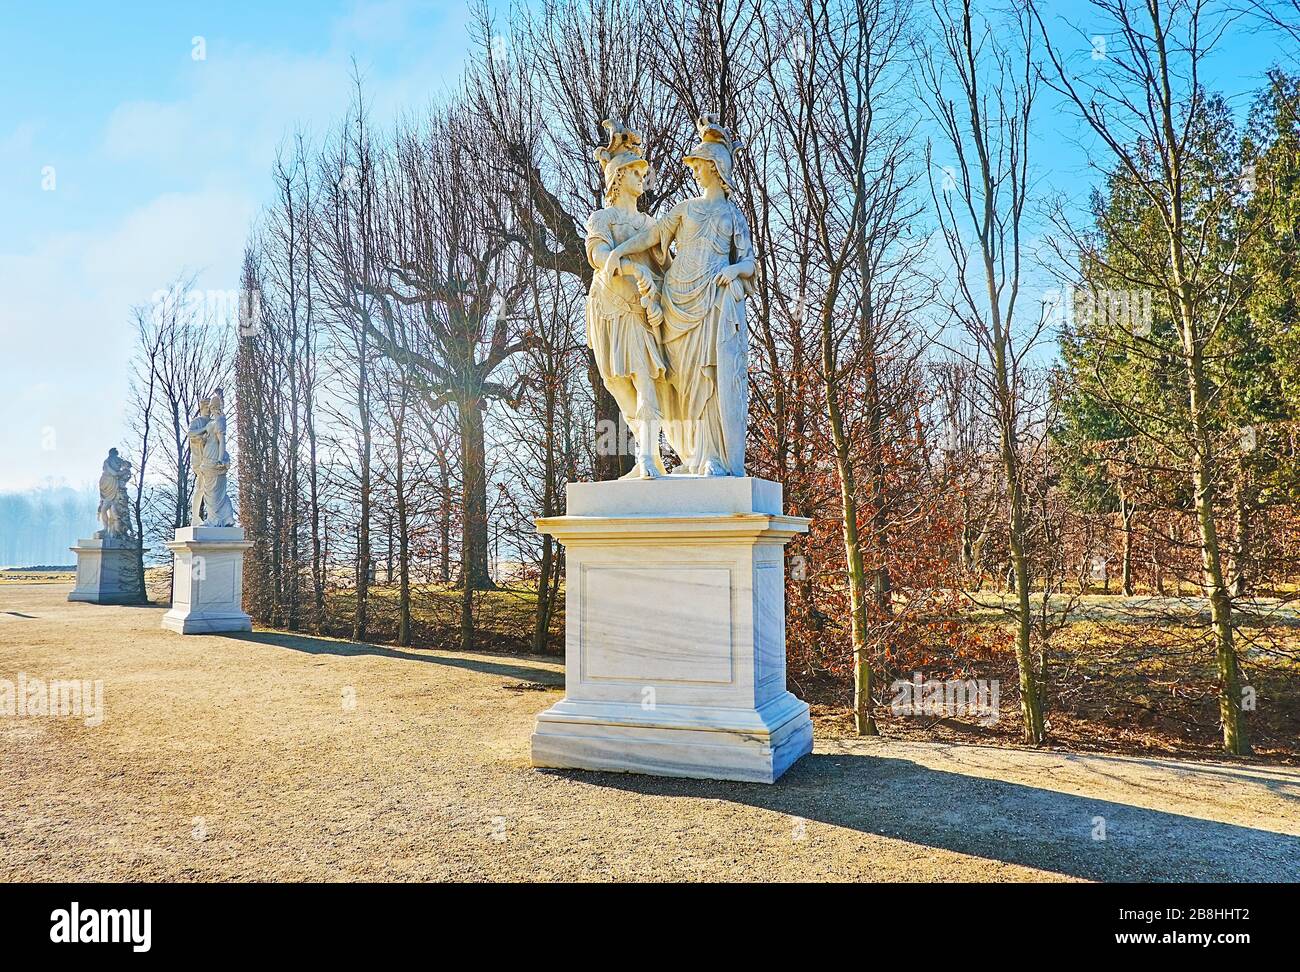 VIENNE, AUTRICHE - 19 FÉVRIER 2019: La ruelle le long des arbres taillés dans le jardin de Schönbrunn (Schlosspark) est décorée avec des statues de style ancien, on Banque D'Images